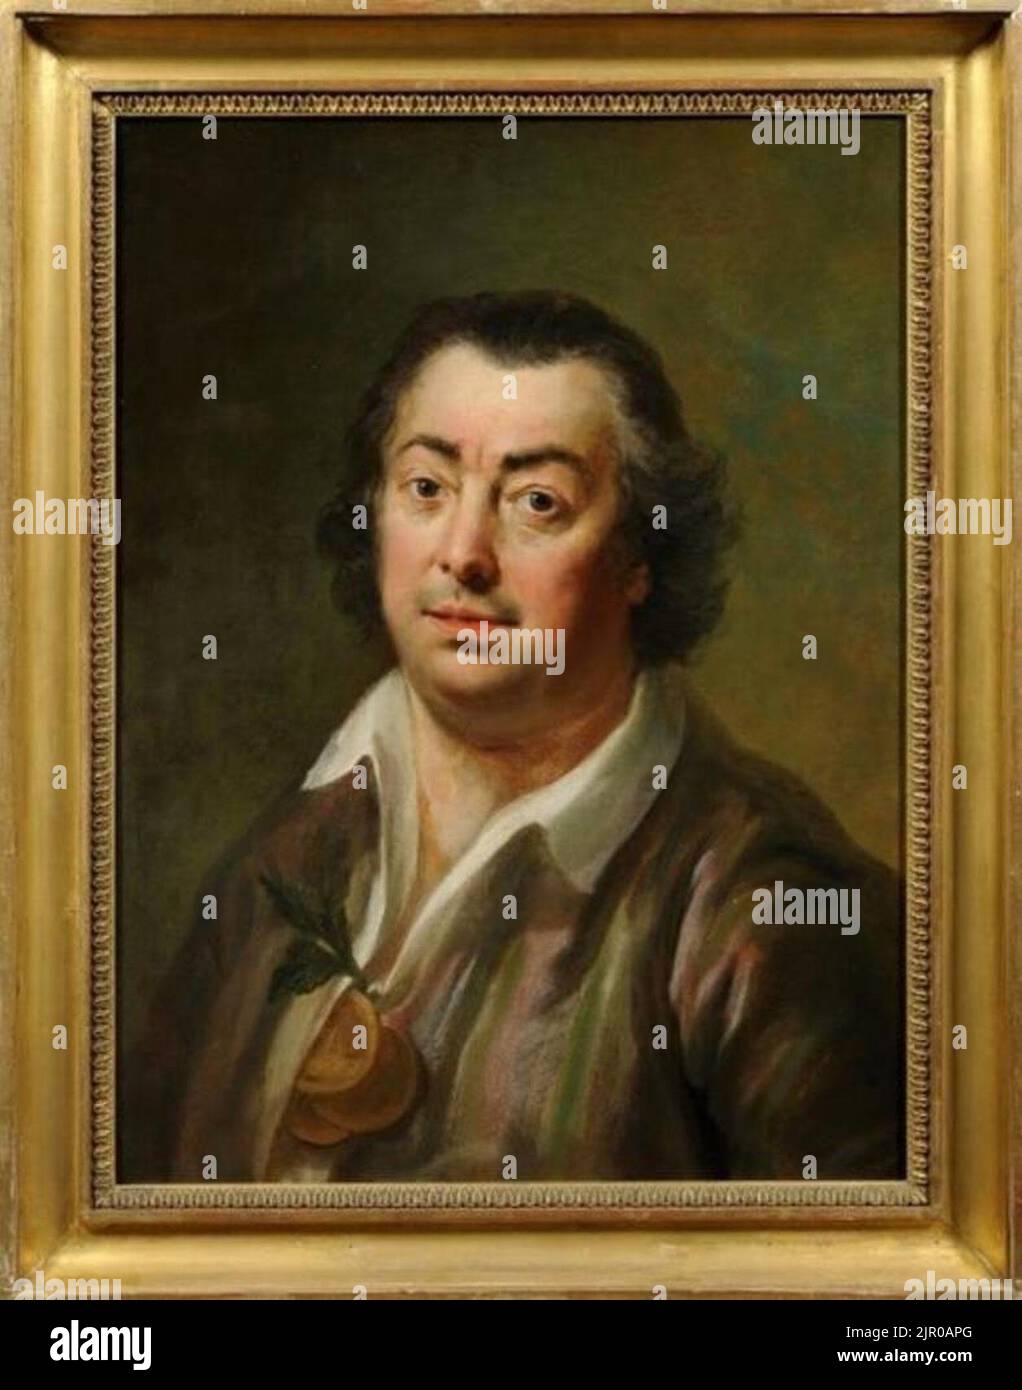 Toegeschreven aan Hendrik Pothoven - Portret van Johannes le Francq van Berkhey (1729-1812) - S 210 Stock Photo